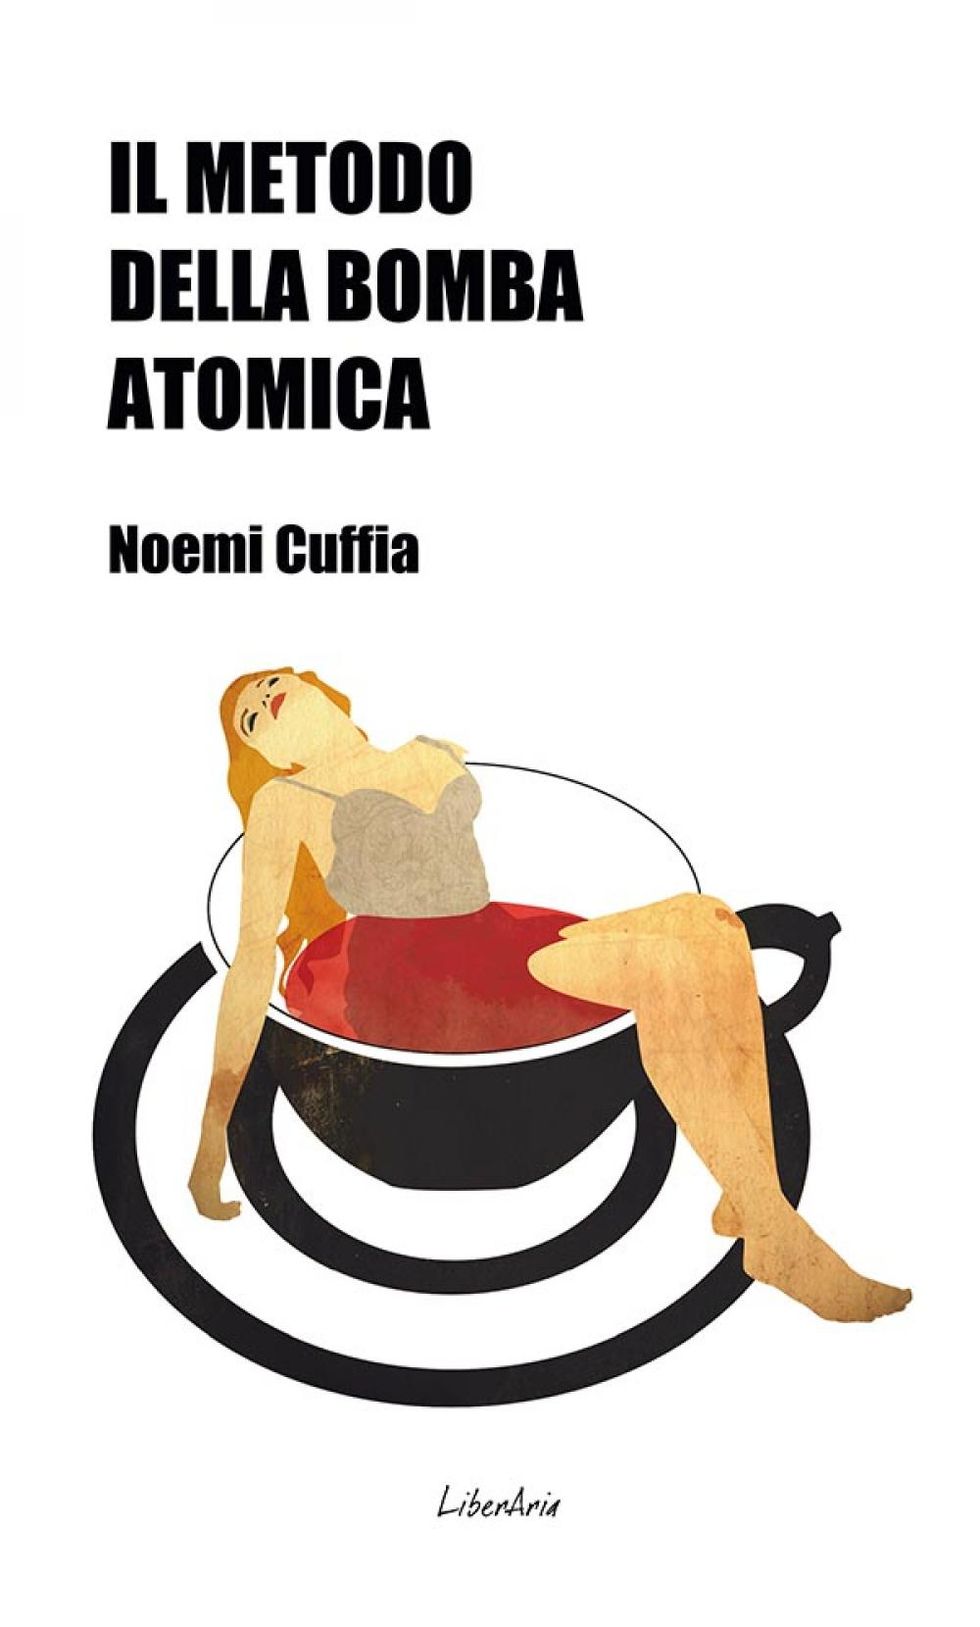 La copertina de “Il metodo della bomba atomica” Noemi Cuffia - LiberAria